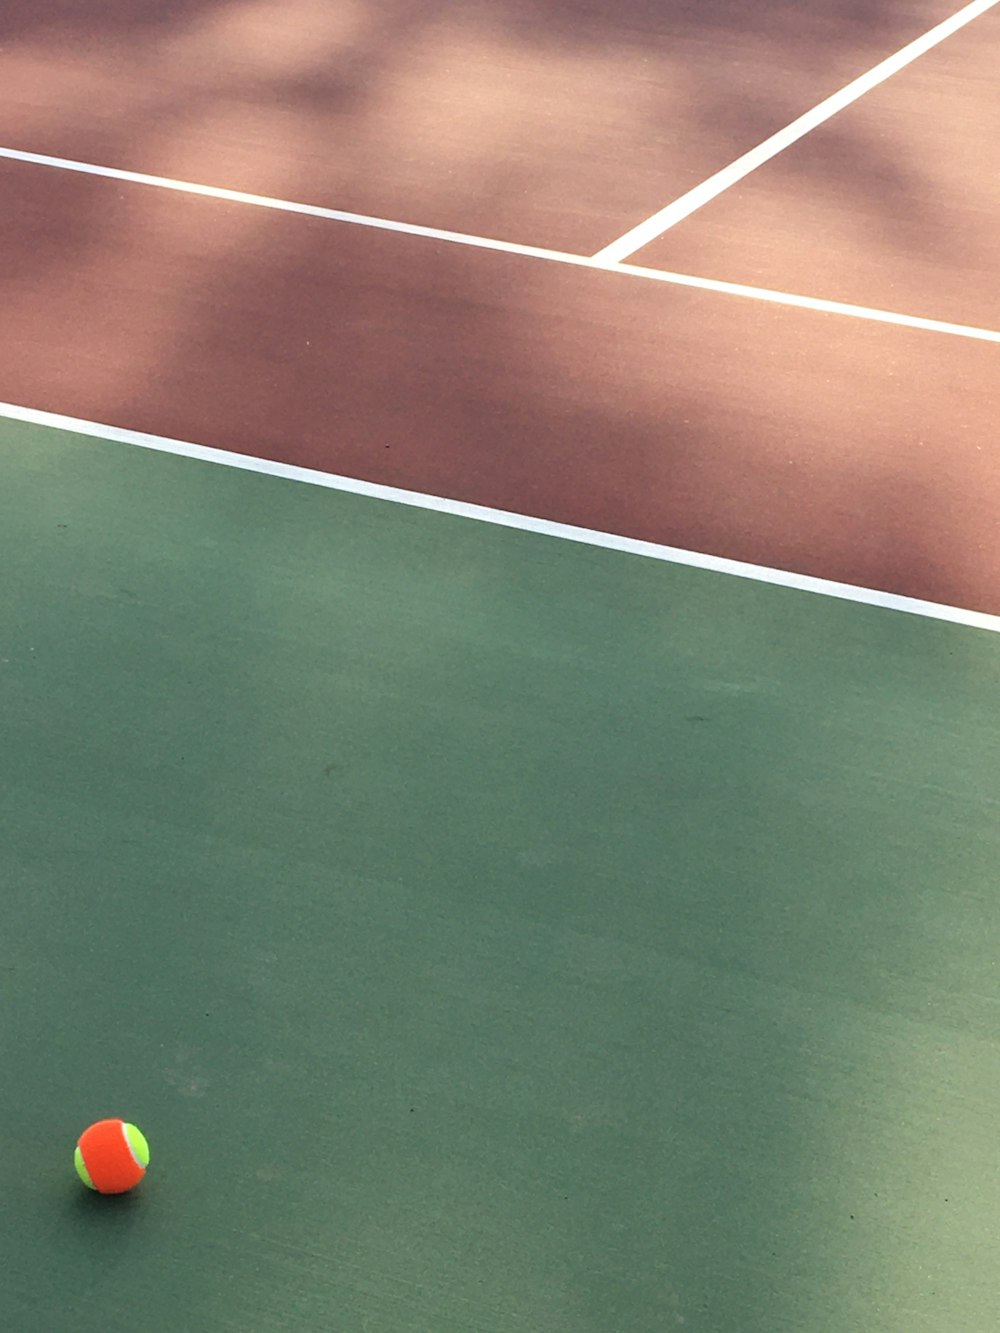 オレンジと緑のテニスボール